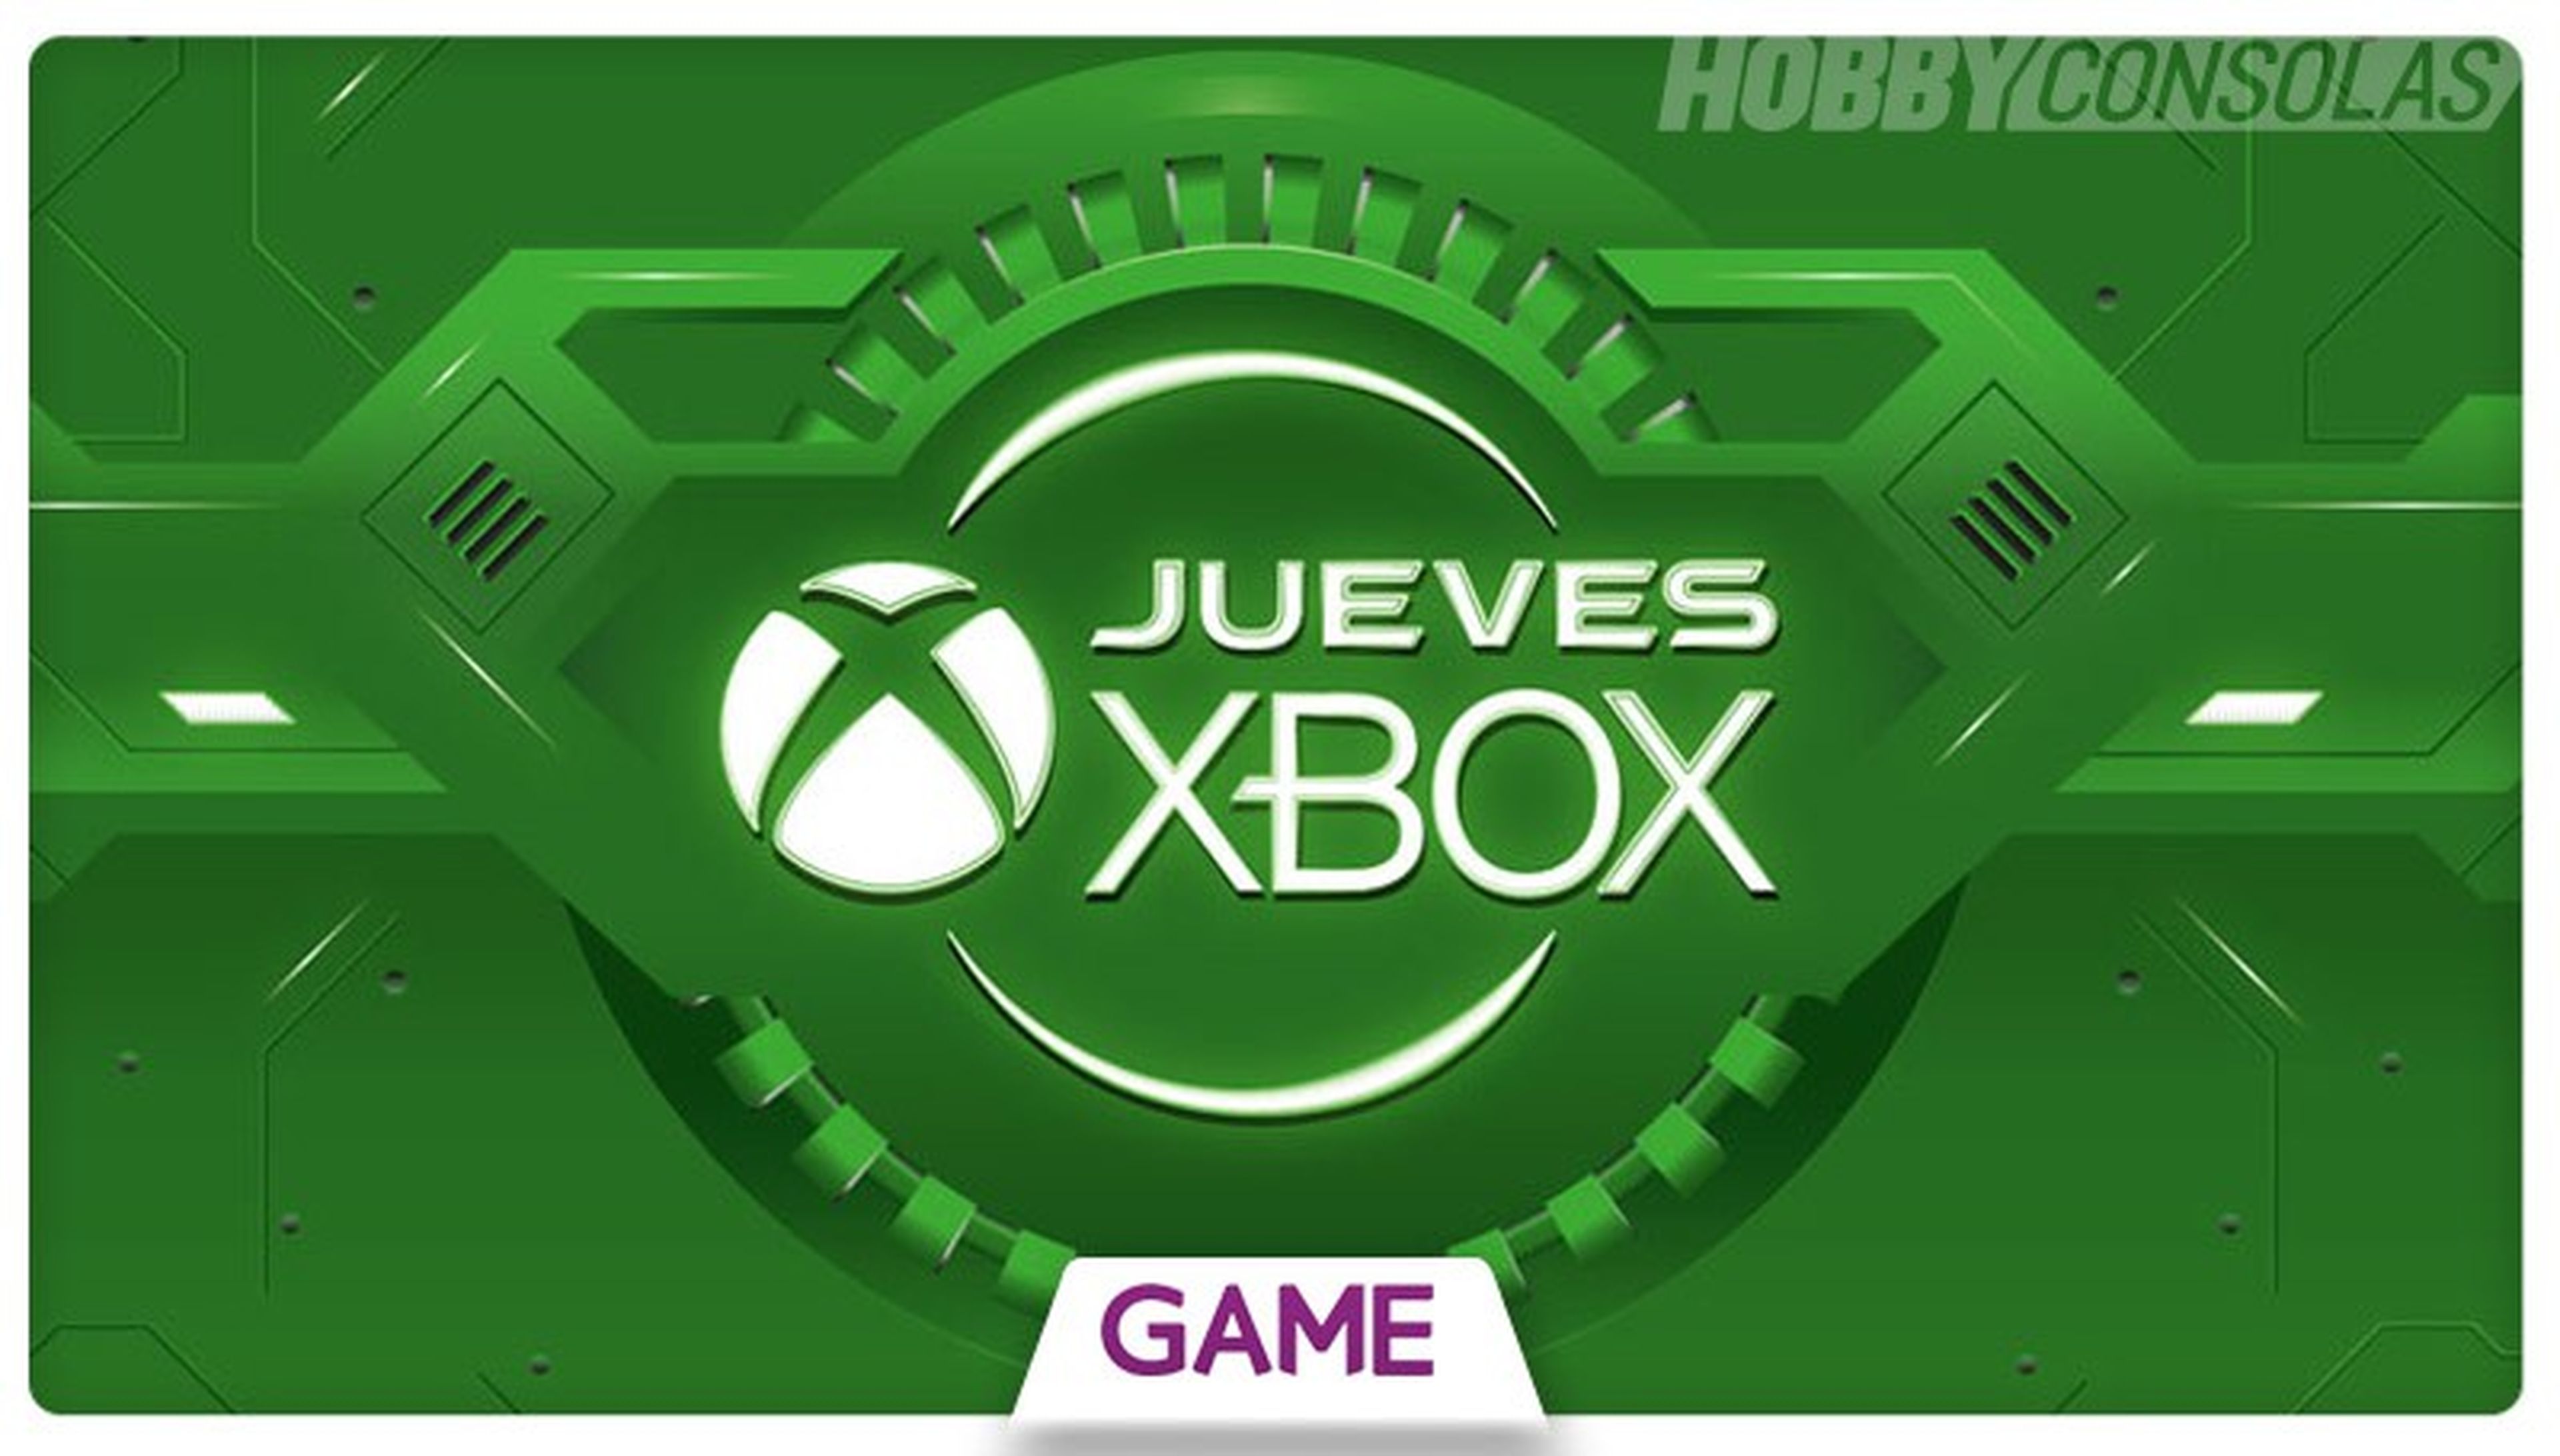 Jueves Xbox en GAME - Ofertas del 02/06/2016